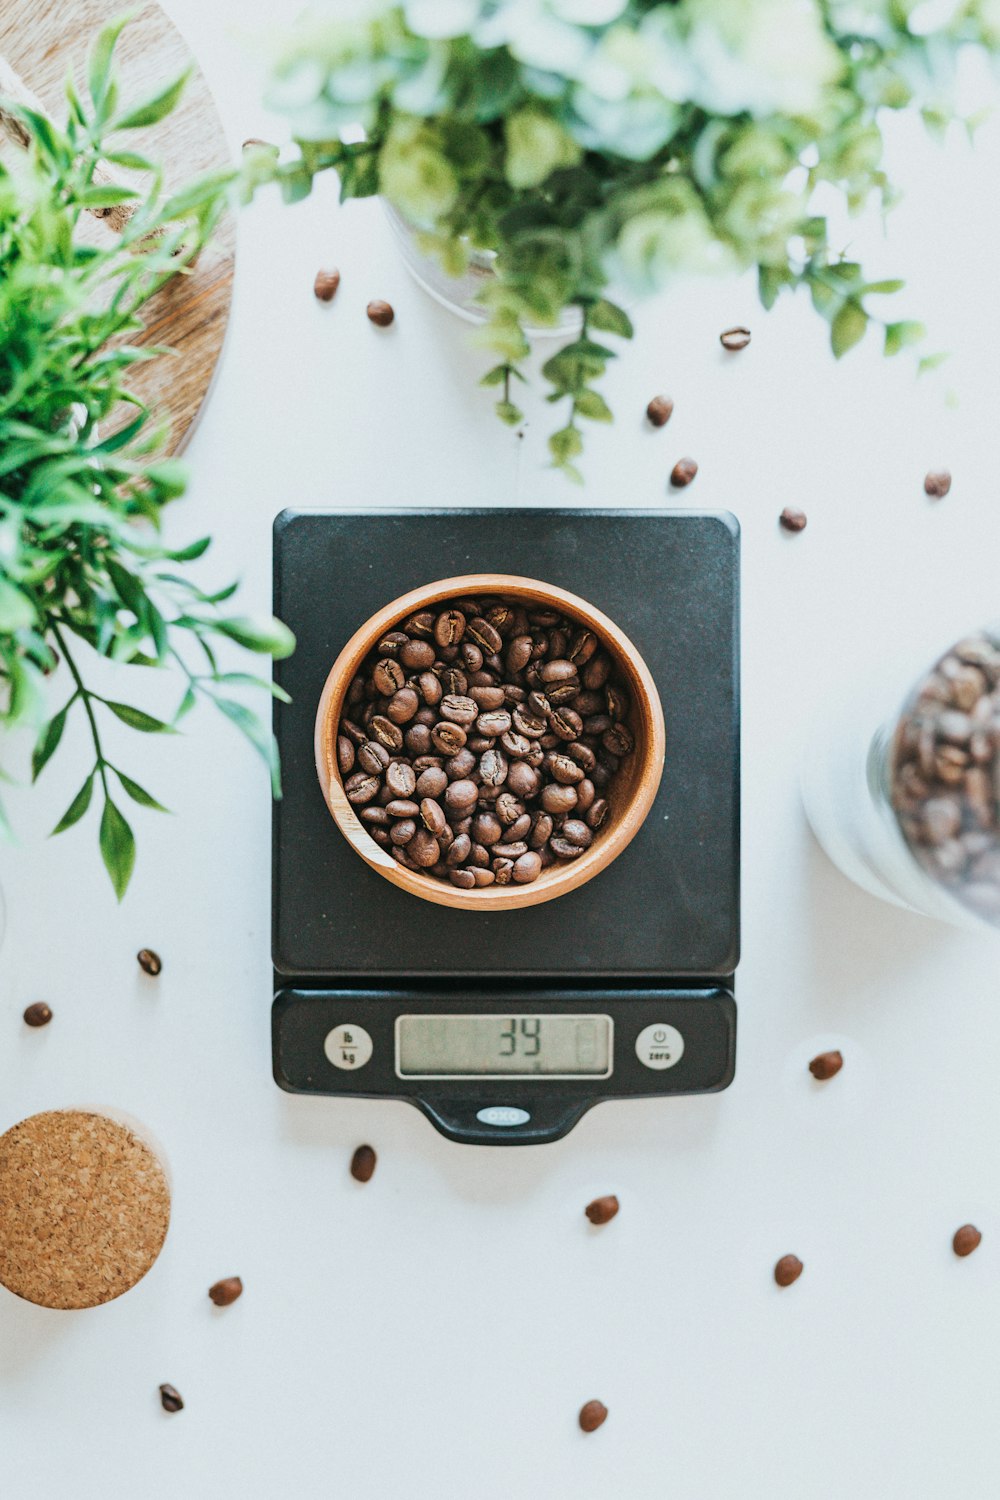 Foto di ciotola piena di chicchi di caffè su bilancia digitale nera a 39 grammi